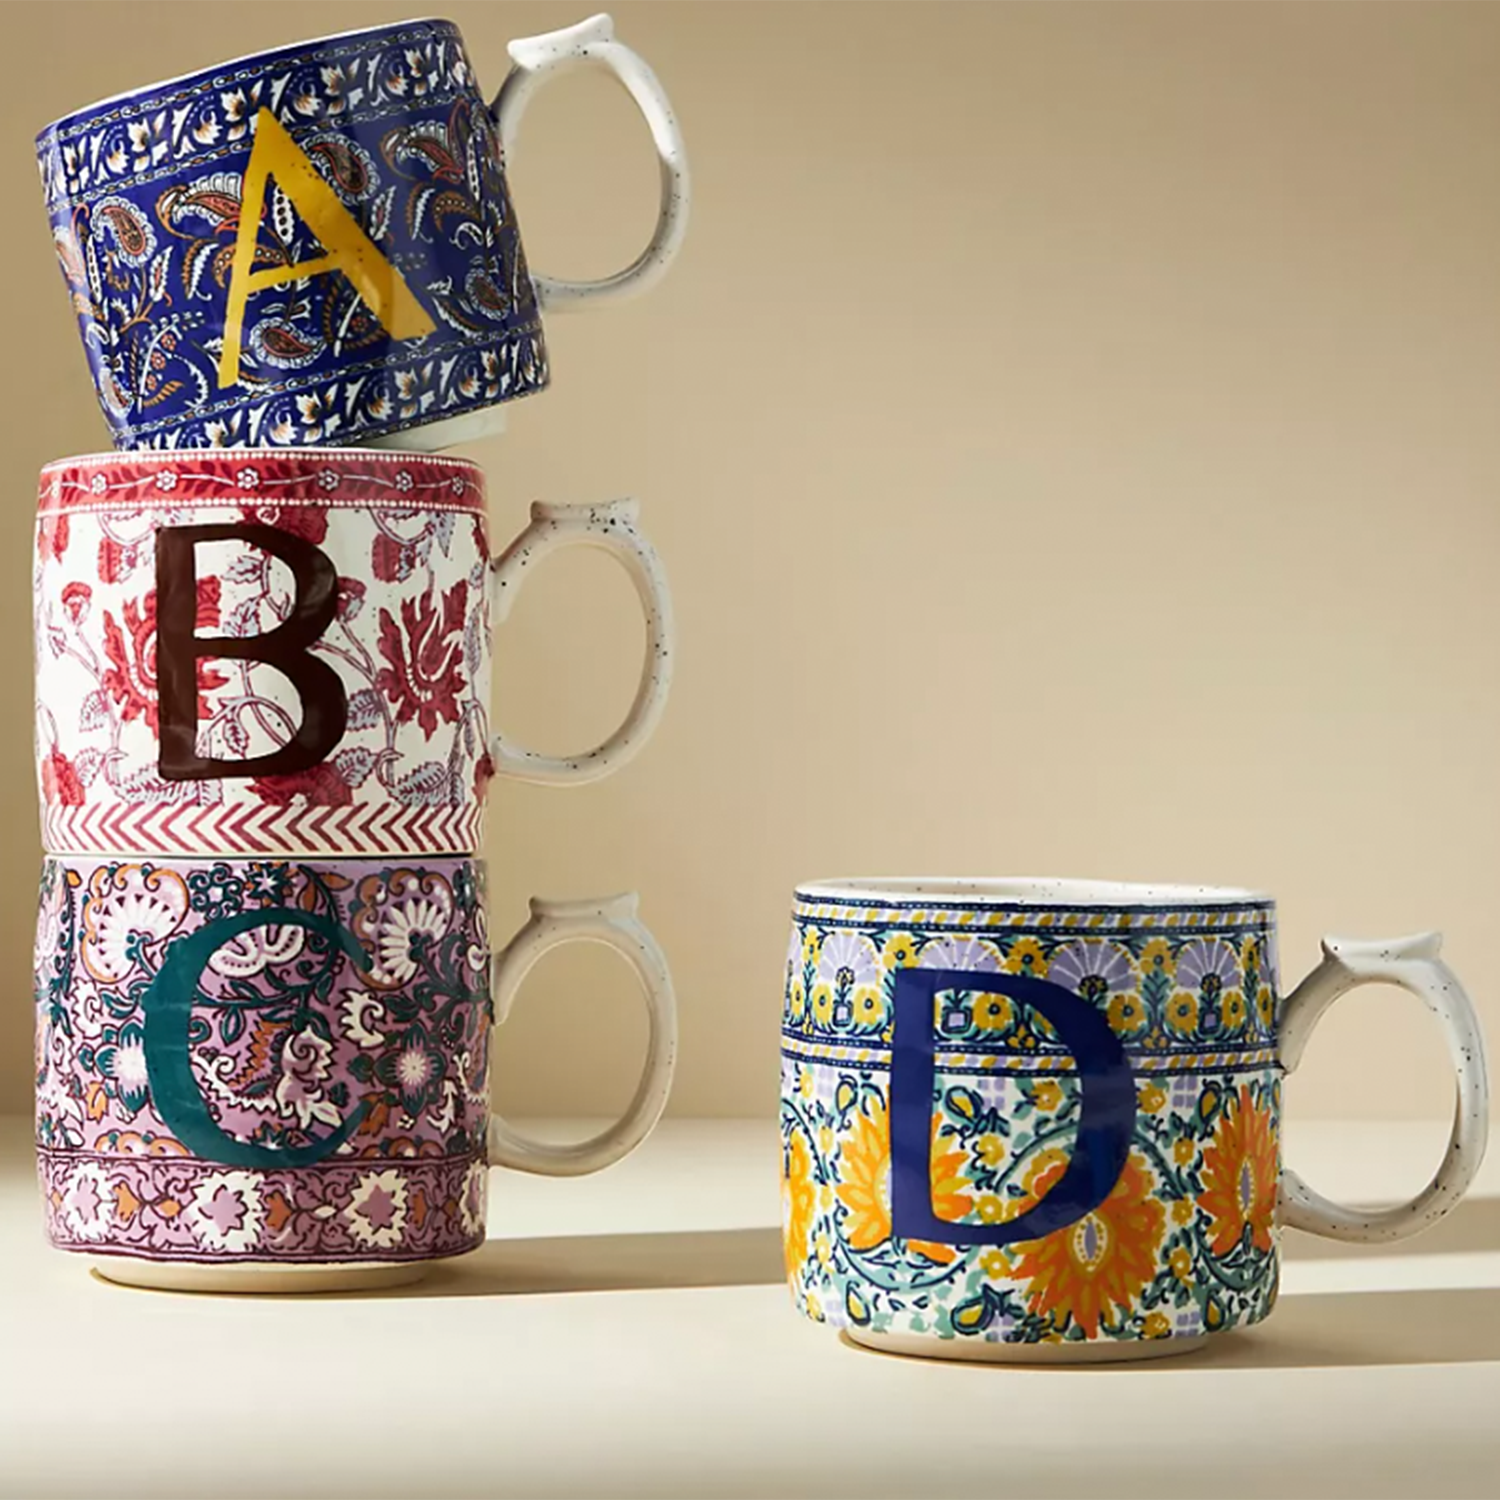 Monogram mugs